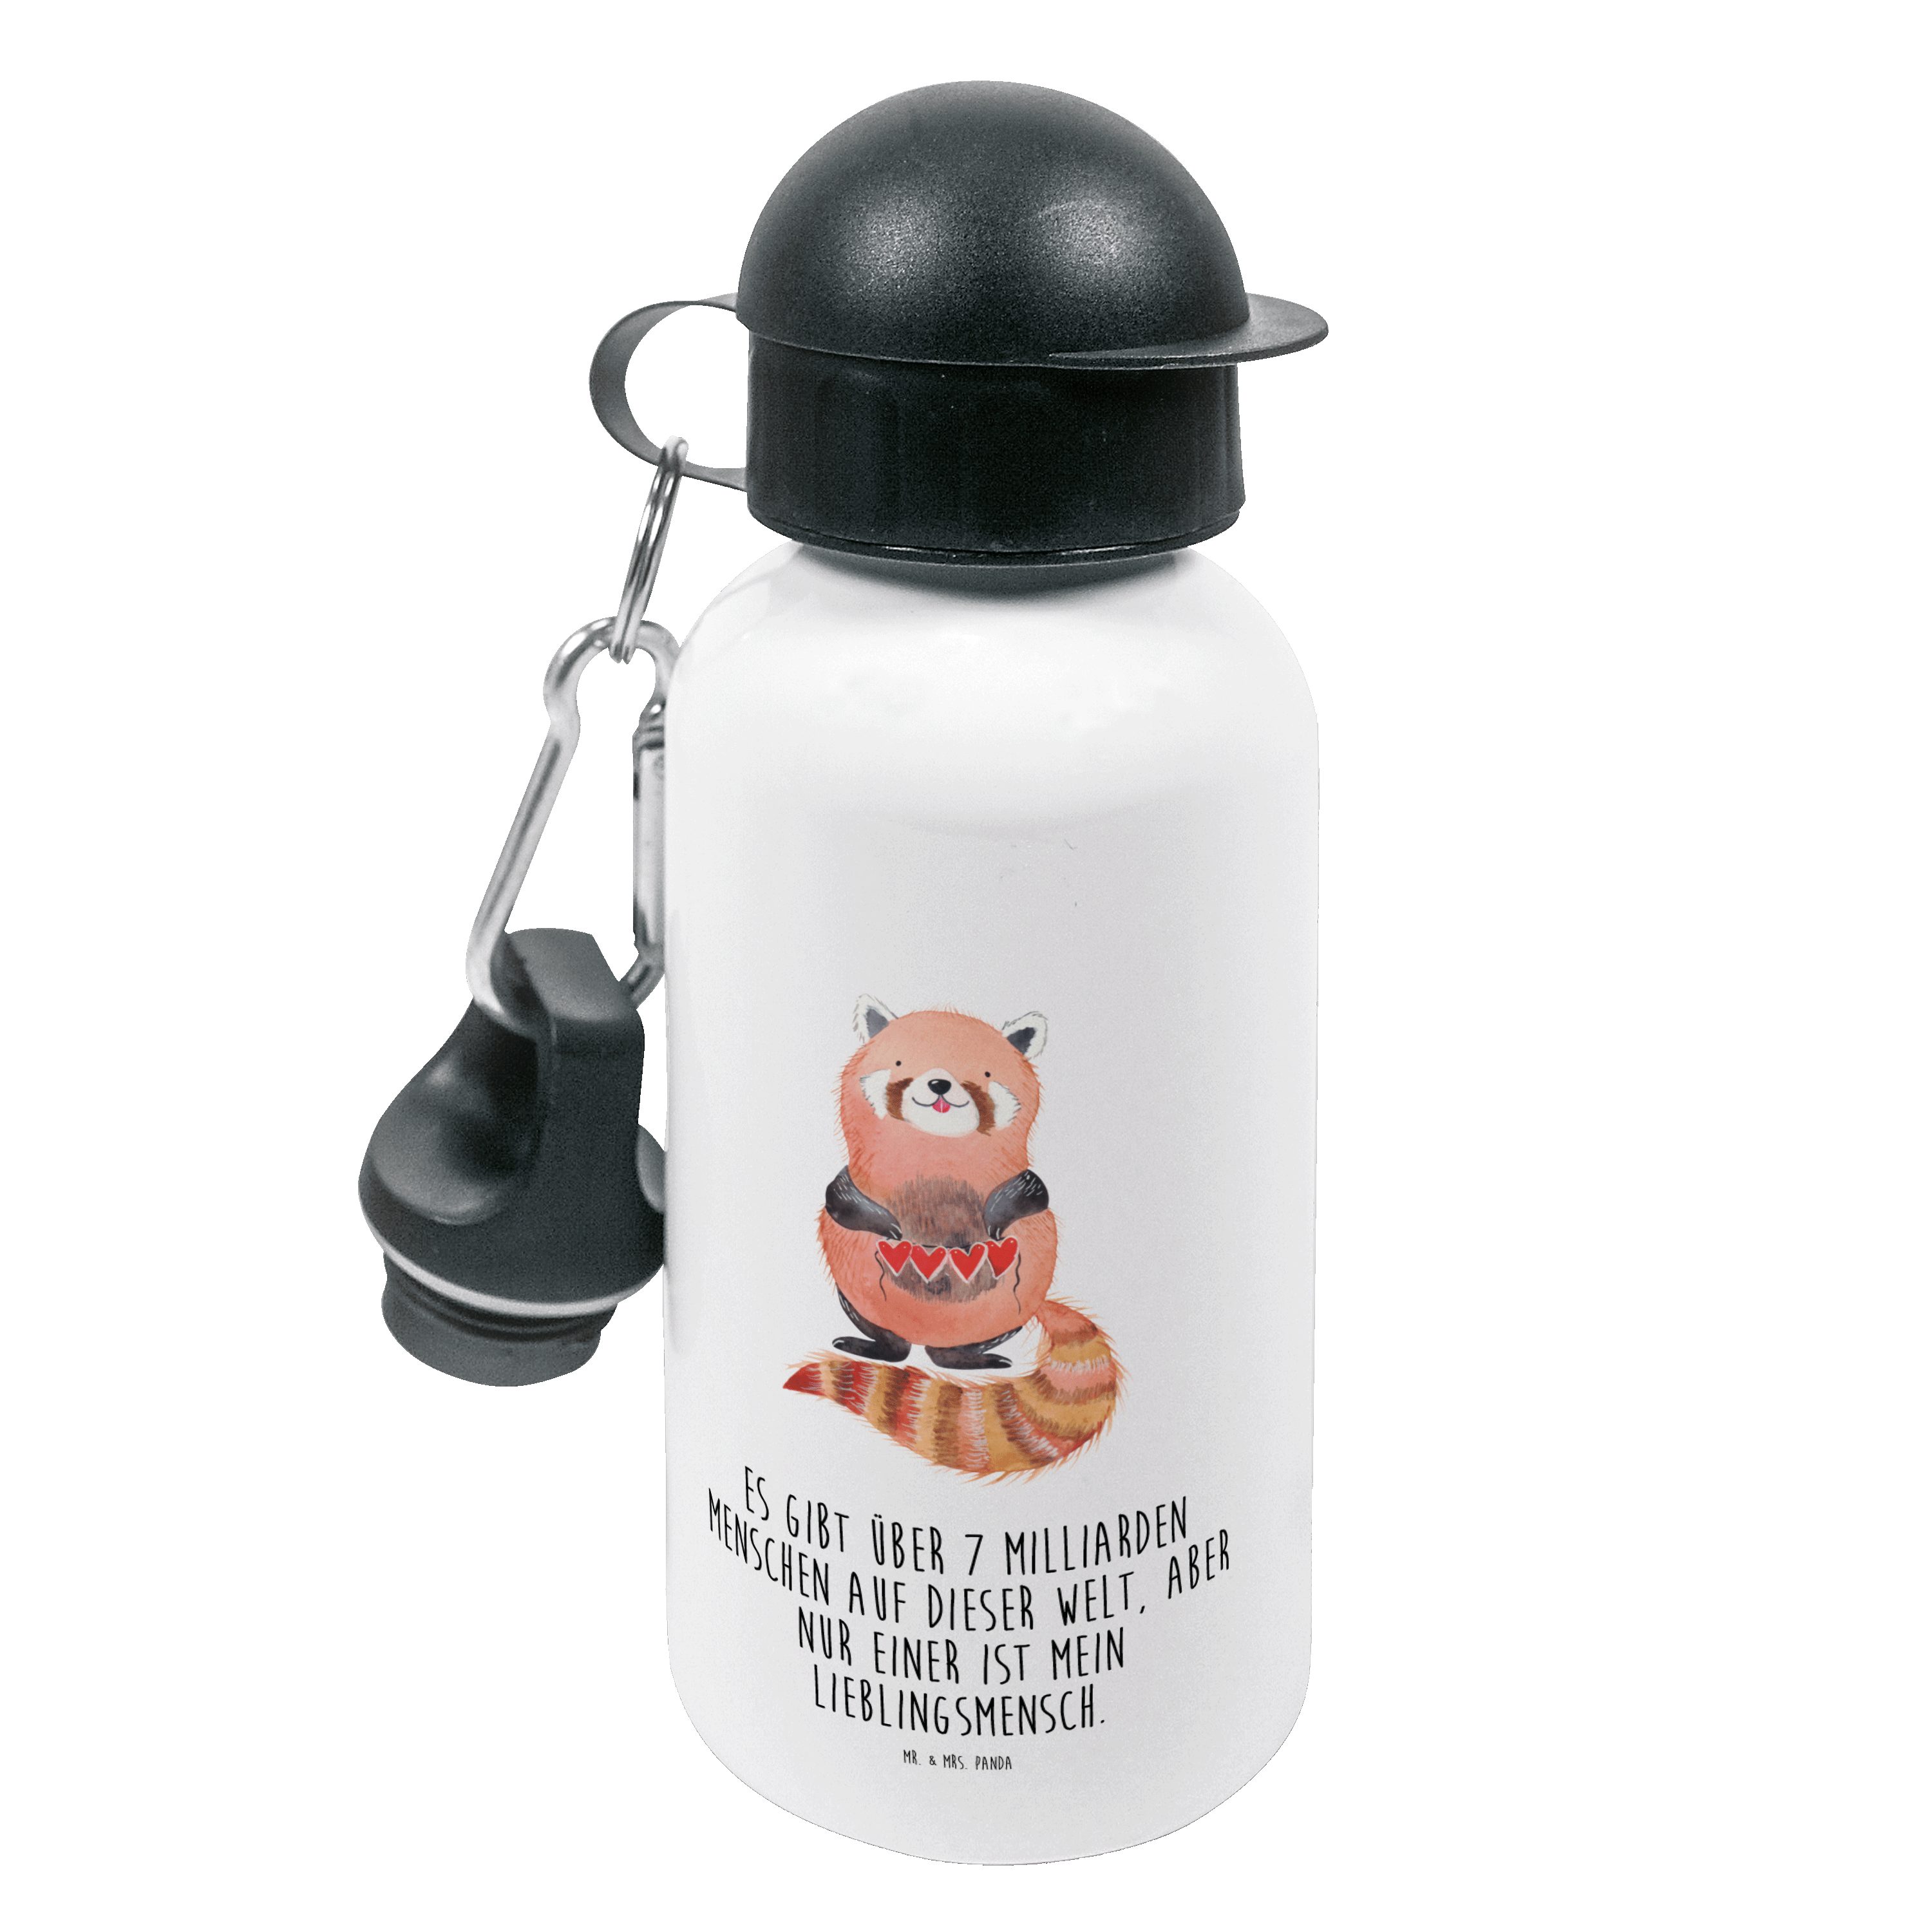 Mr. & Mrs. Panda Trinkflasche Roter Panda - Weiß - Geschenk, Kinder Trinkflasche, lustige Sprüche, Bruch- und auslaufsicher